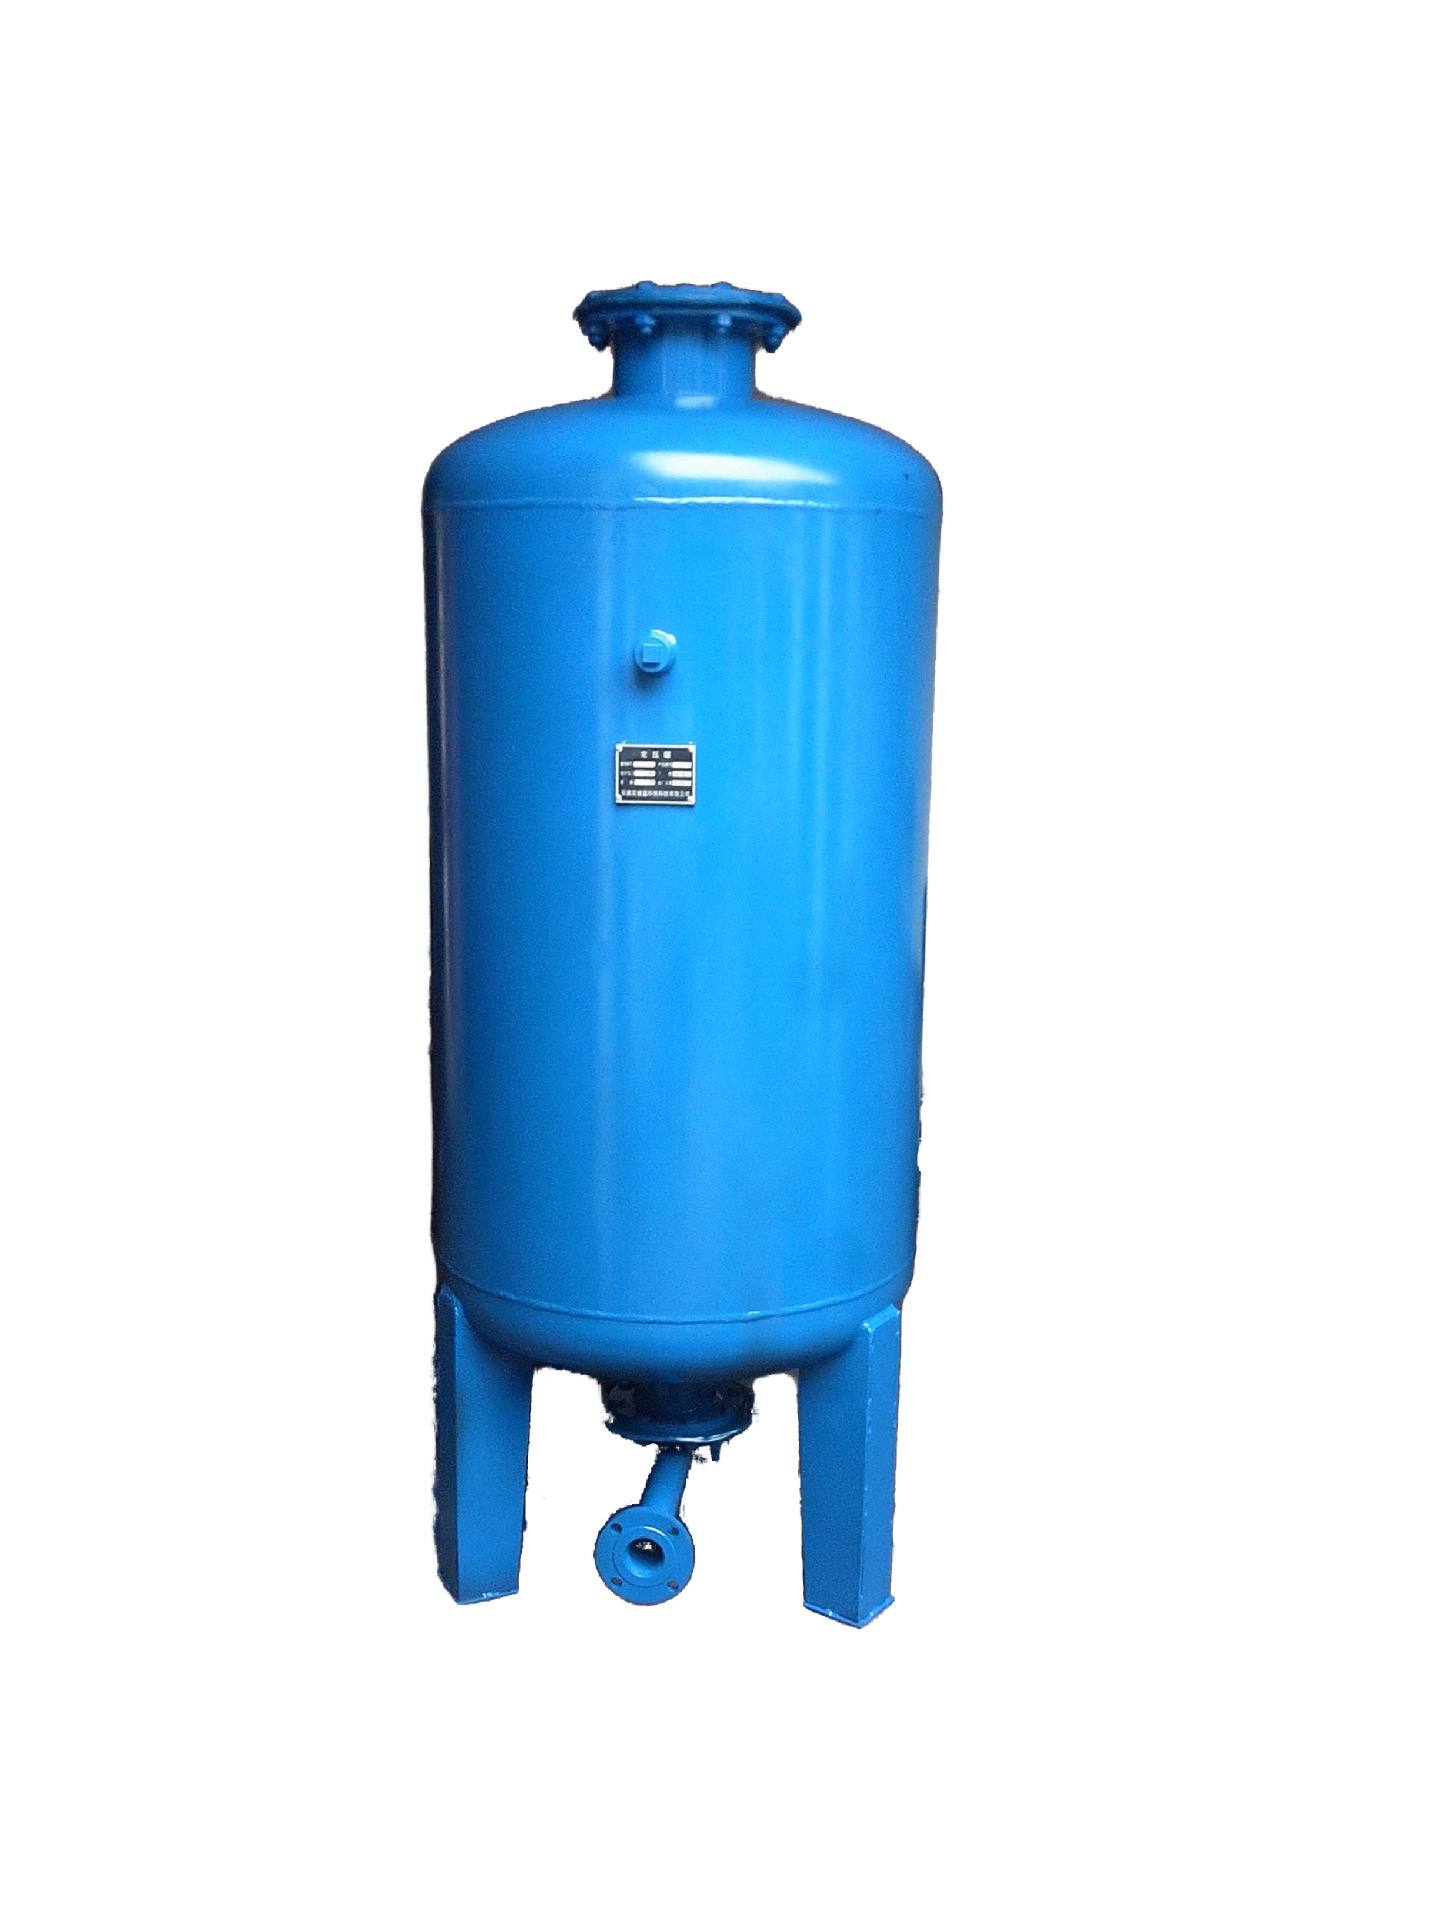 有关气压罐的有效水容积和压力等级。